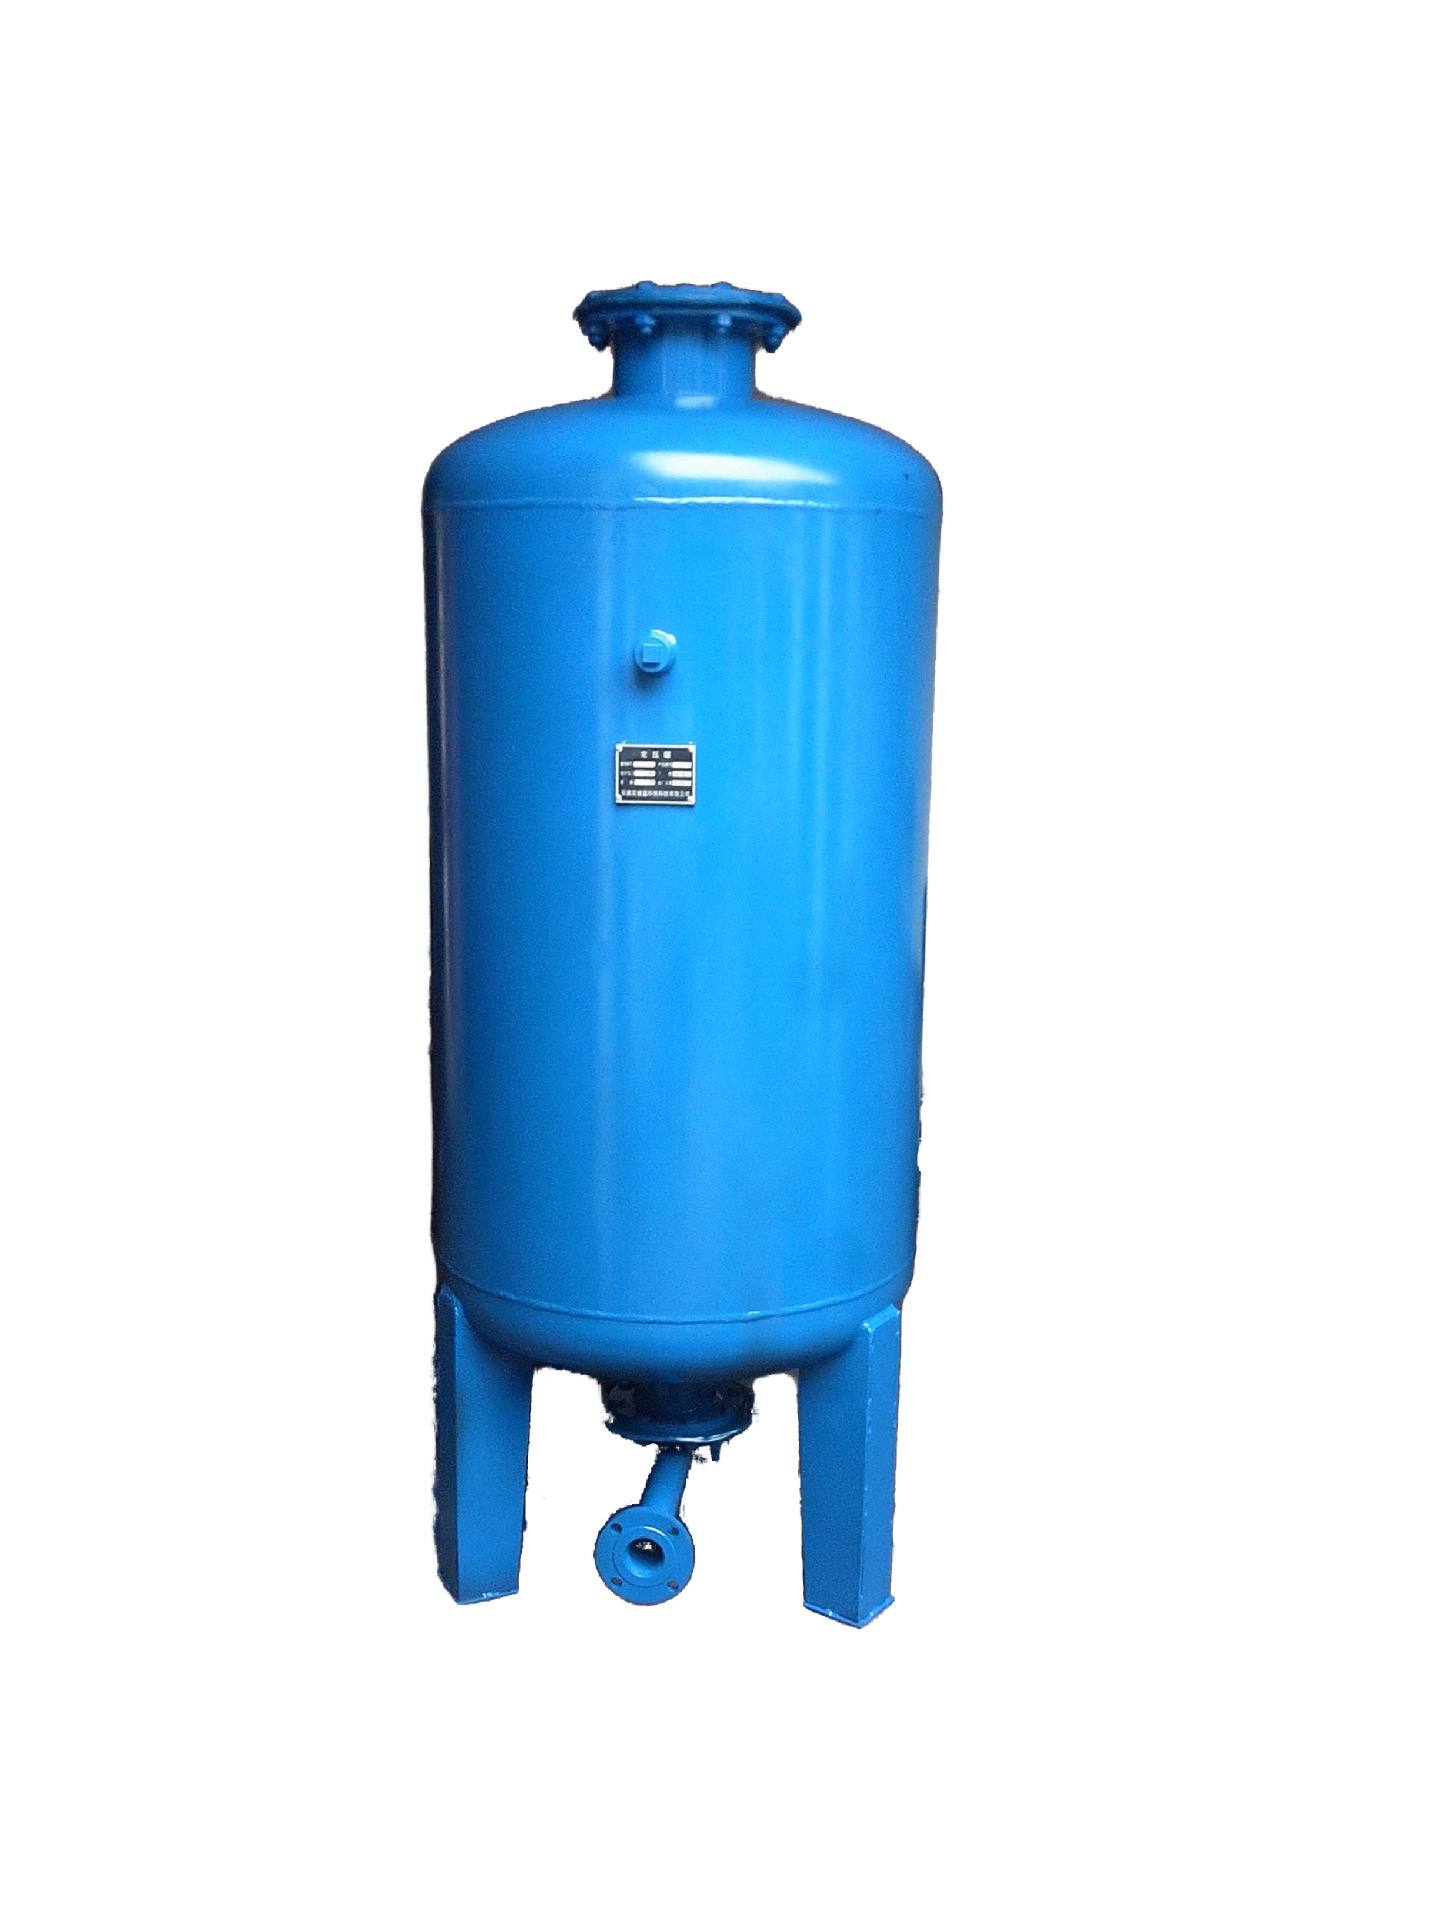 有关气压罐的有效水容积和压力等级。